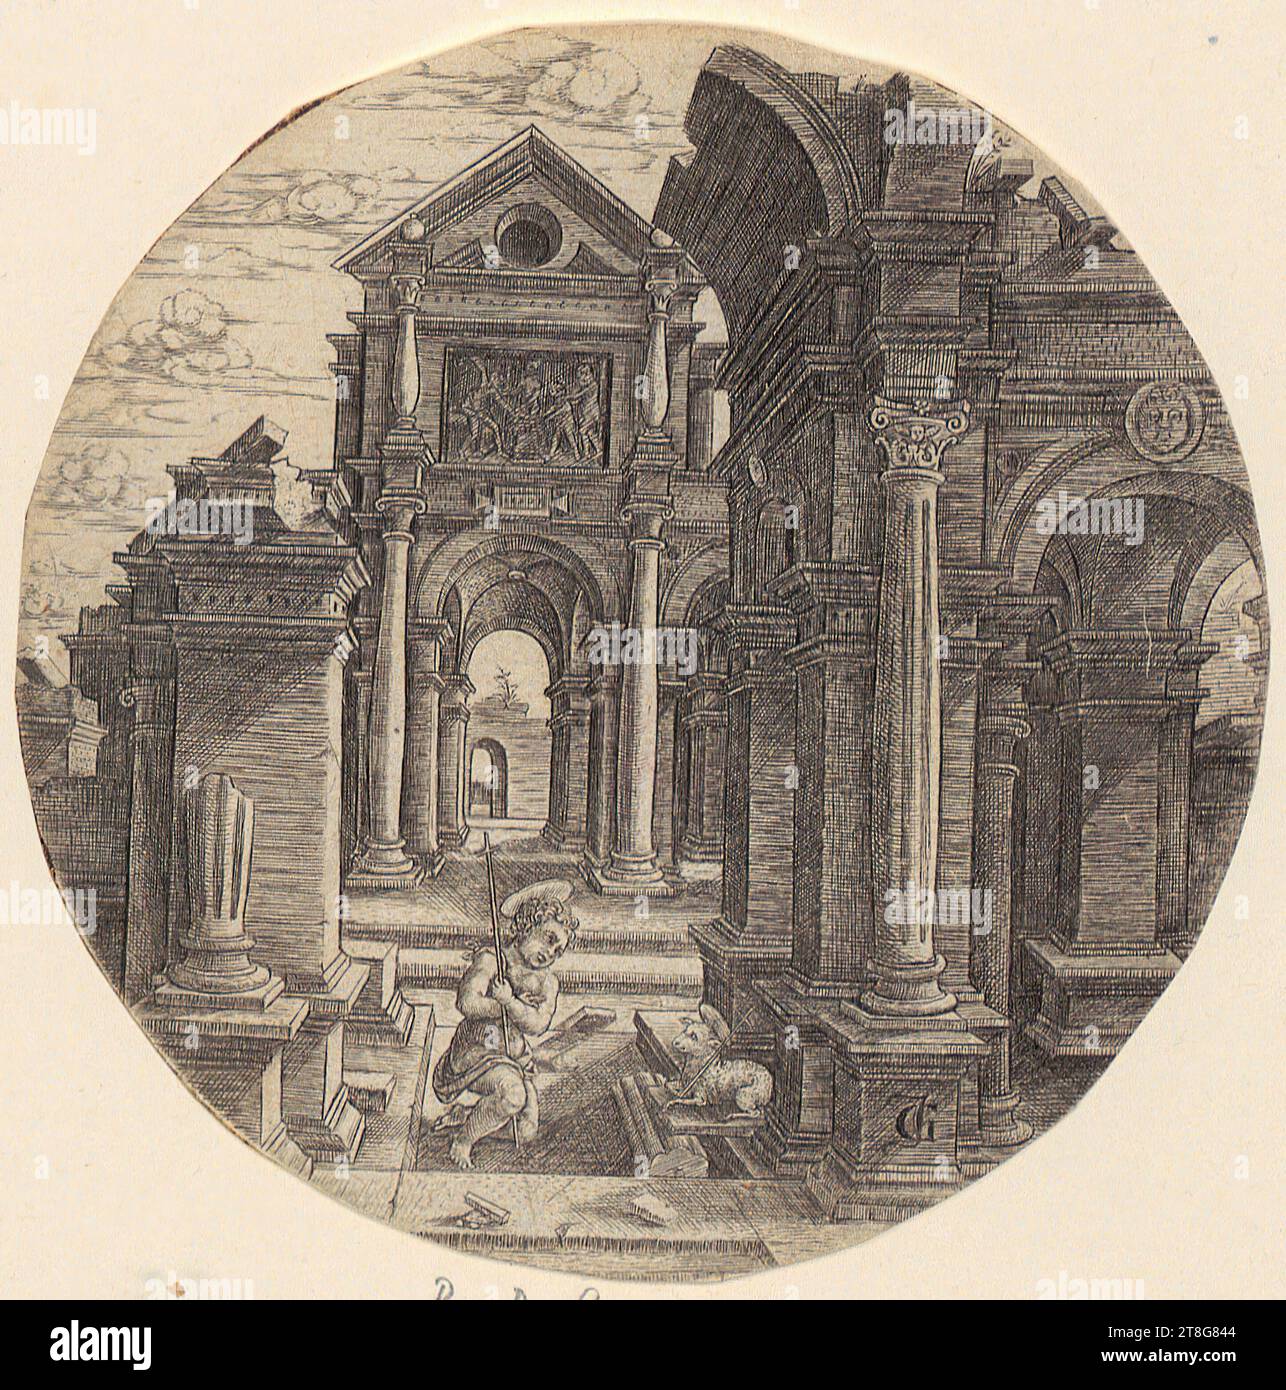 Monogramist JG (1522 mentionné à)Jean de Gourmont I 3 (1483 - 1522, 1523), ancienne attribution, rue Little Boy Jean à l'agneau, date d'origine de l'impression : c. 1520, gravure sur cuivre, diamètre : 11,4 cm, monogramme 'JG' en bas à droite sur le pied de la colonne Banque D'Images